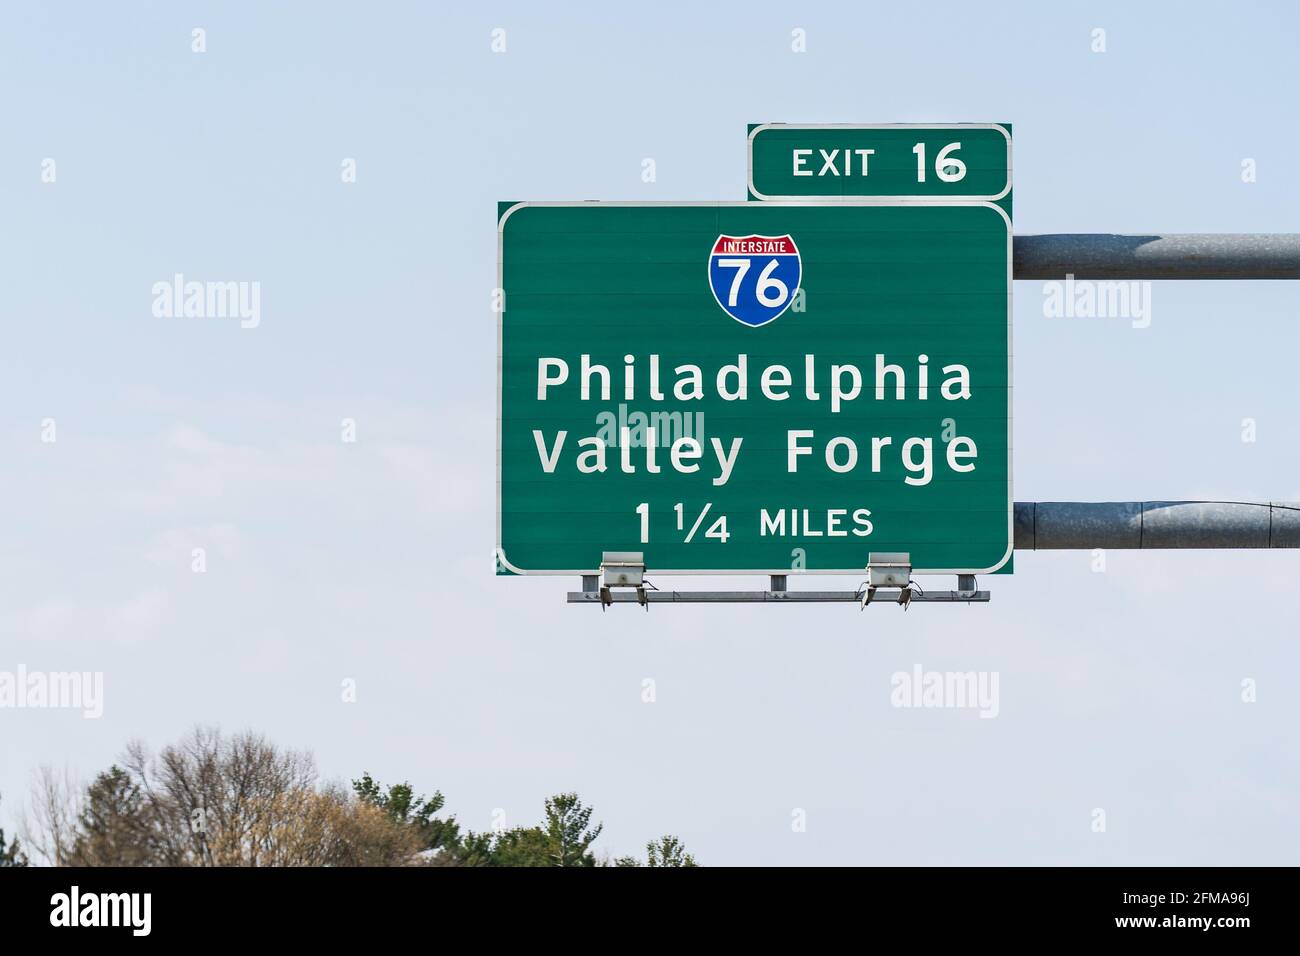 Interstate Highway 476, également connue sous le nom de Blue route, sortie 16, direction Interstate 76 vers Philadelphie et Valley Forge Pennsylvania Banque D'Images